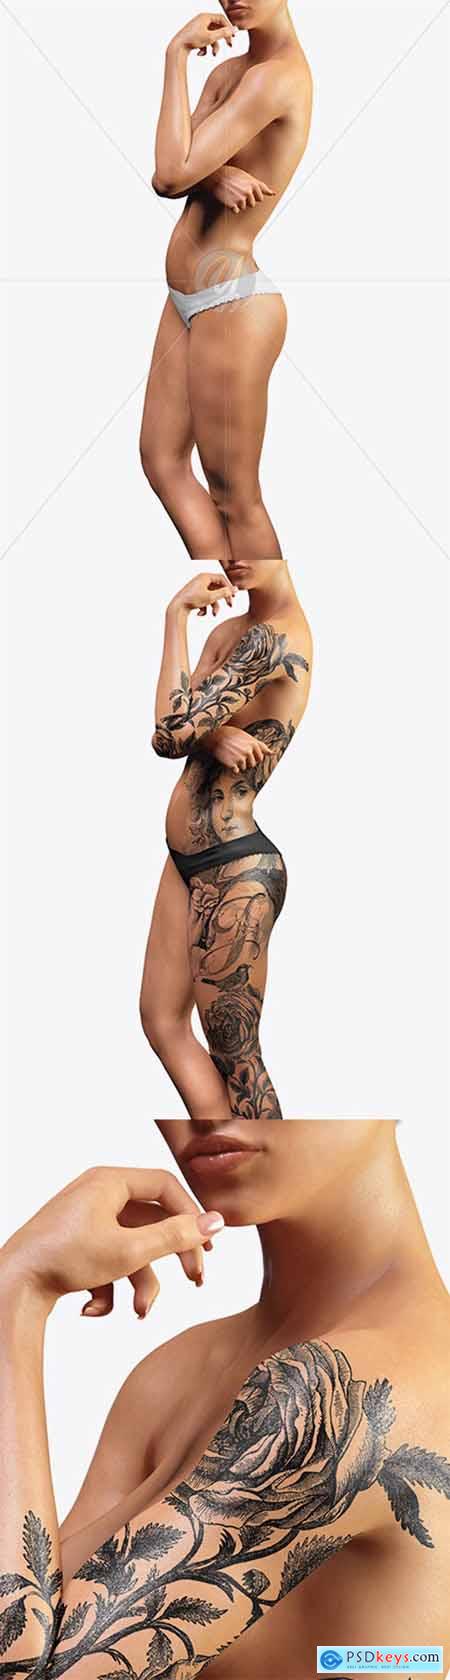 Naked Female Body Mockup 21138